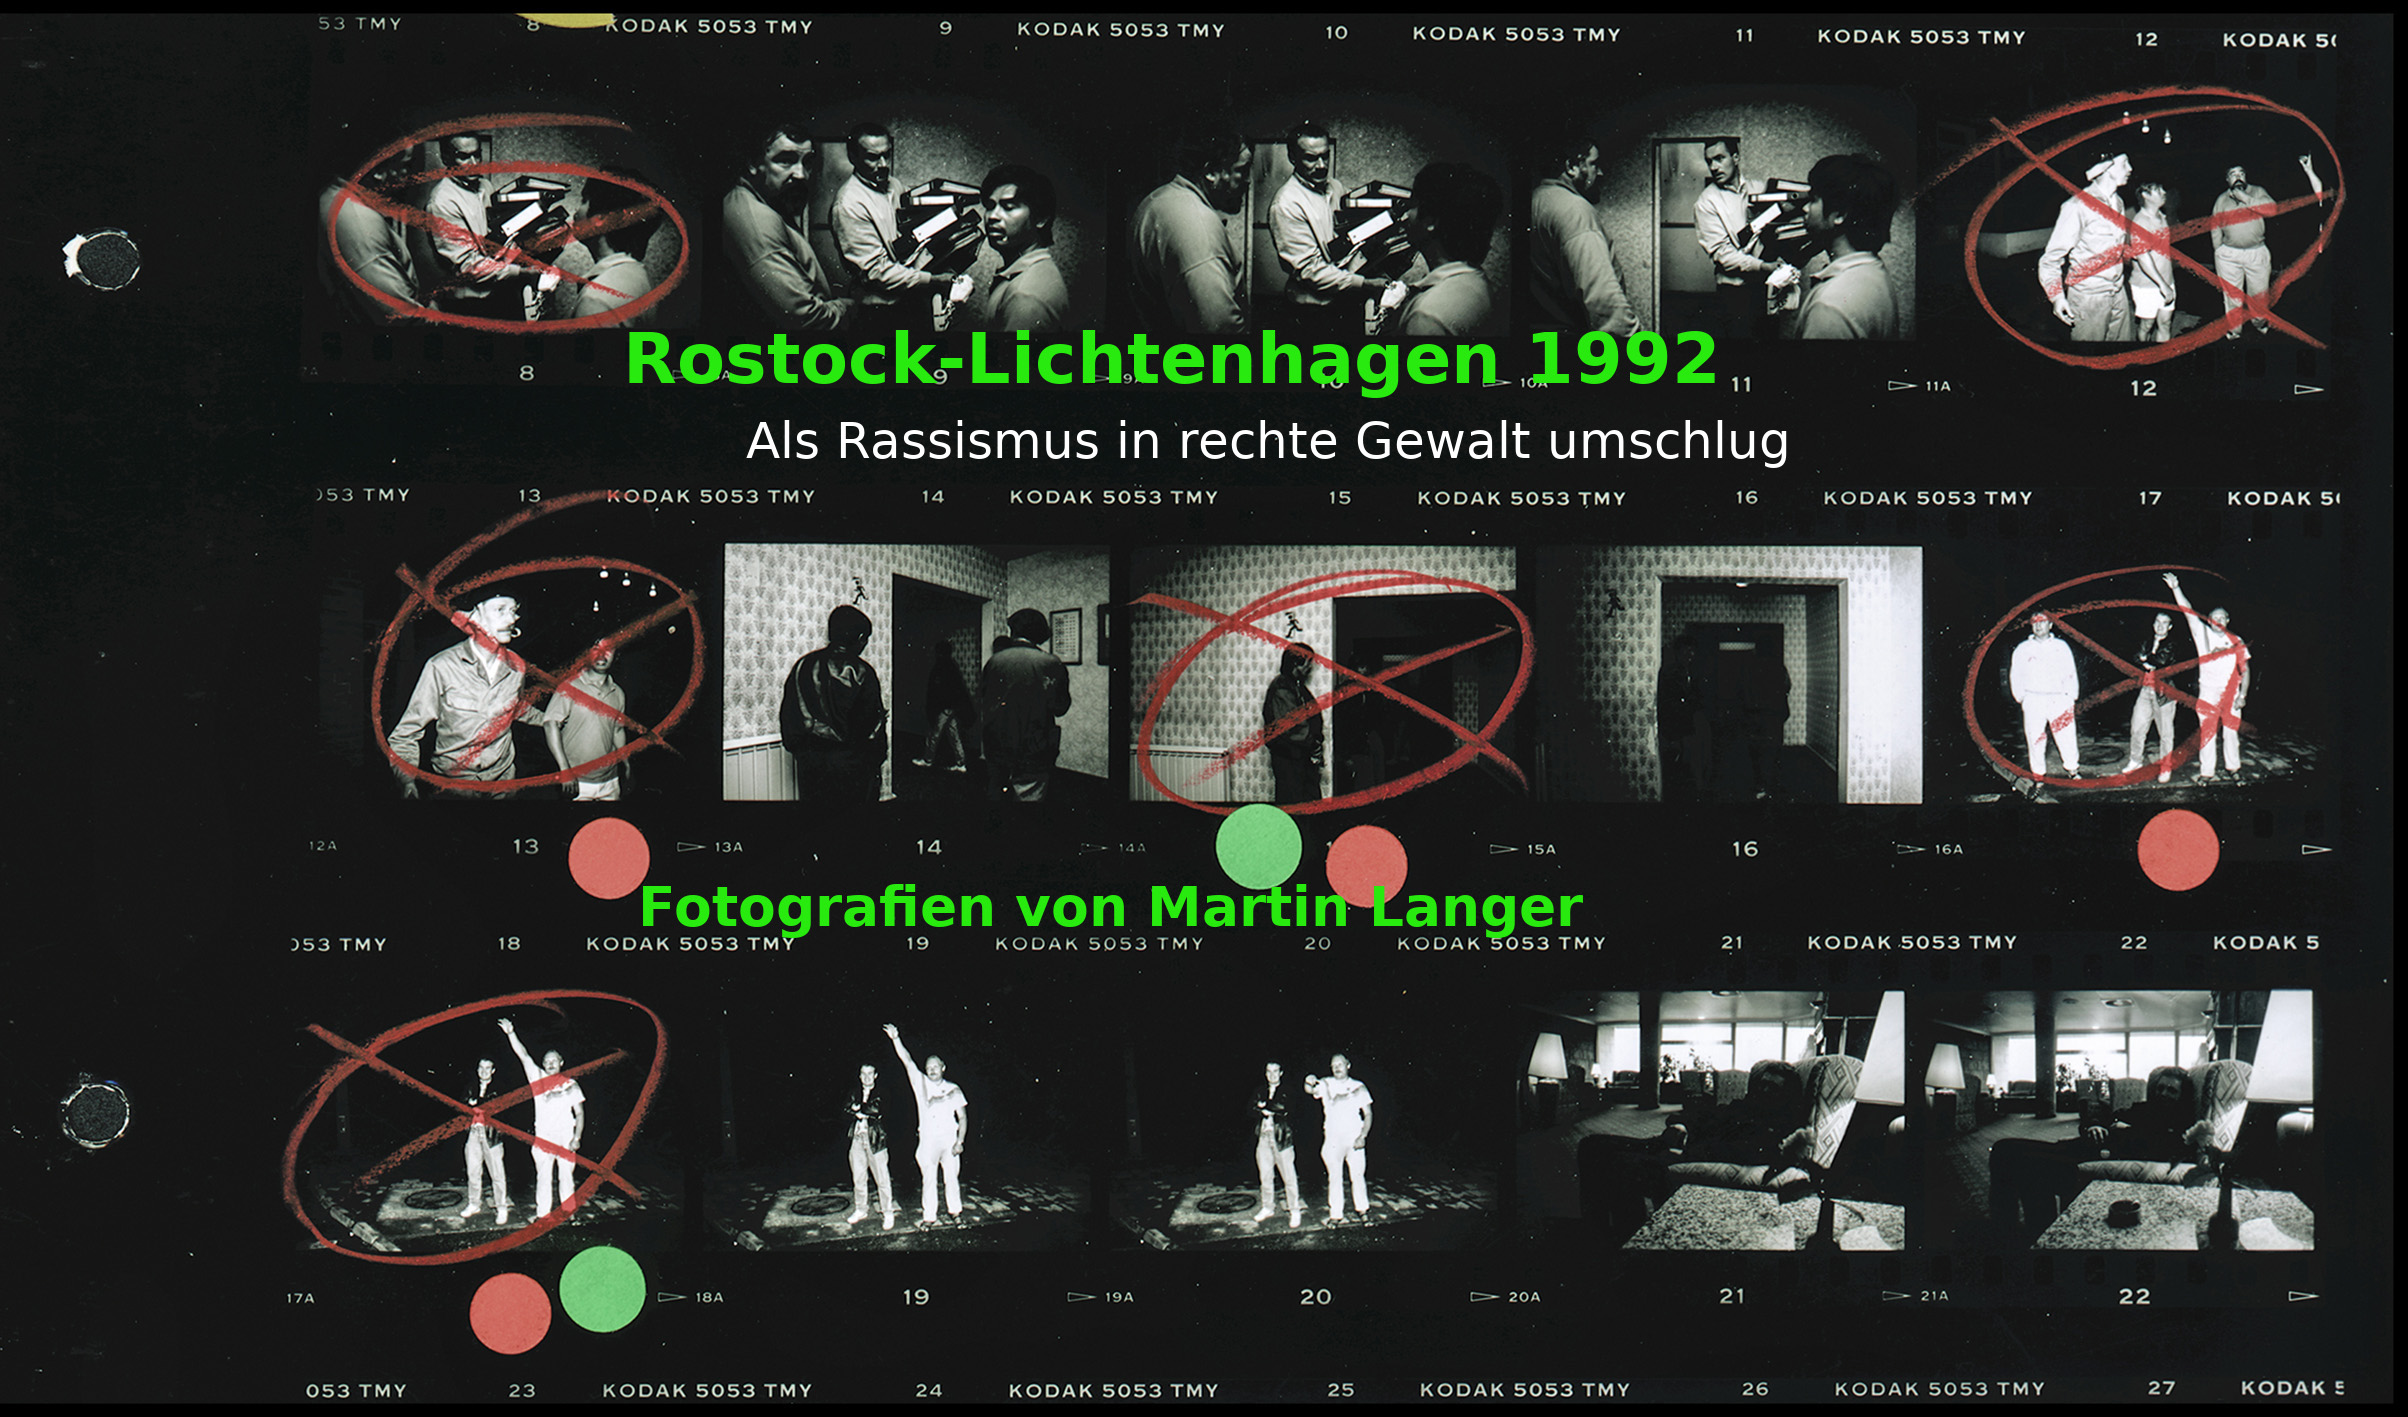 Demnächst: Ausstellung Rostock-Lichtenhagen 1992